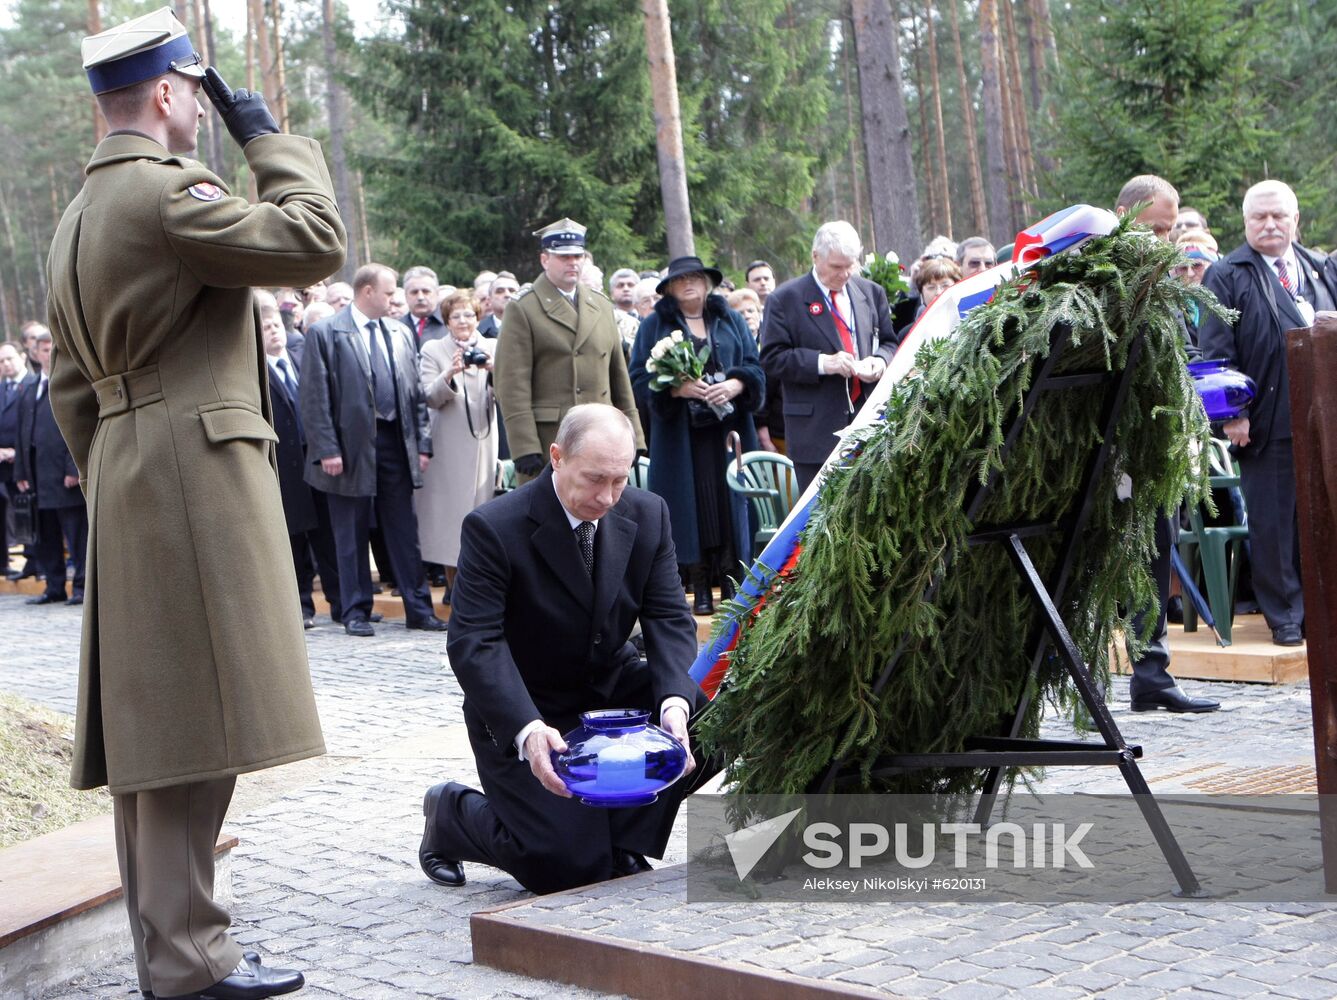 Vladimir Putin lays wreath at Katyn memorial